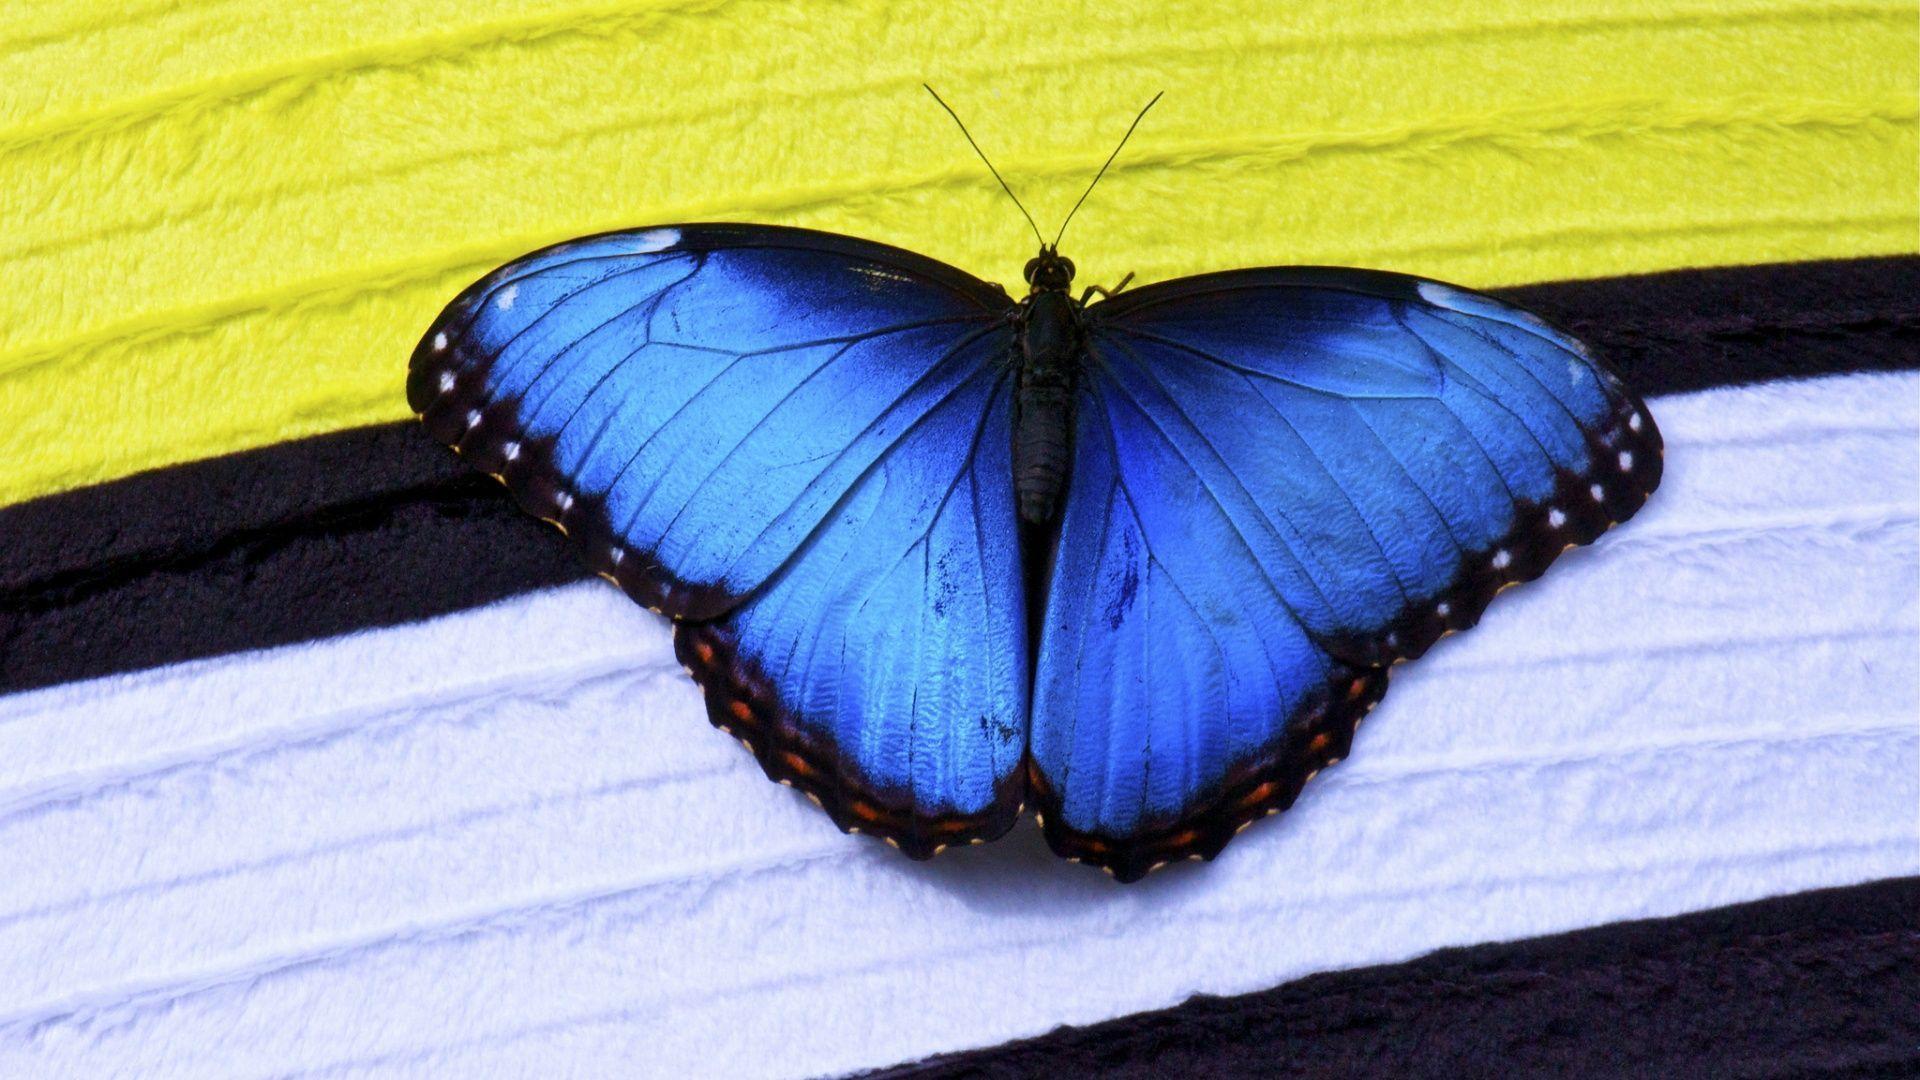 Papillon En LibertÃ© wallpaper